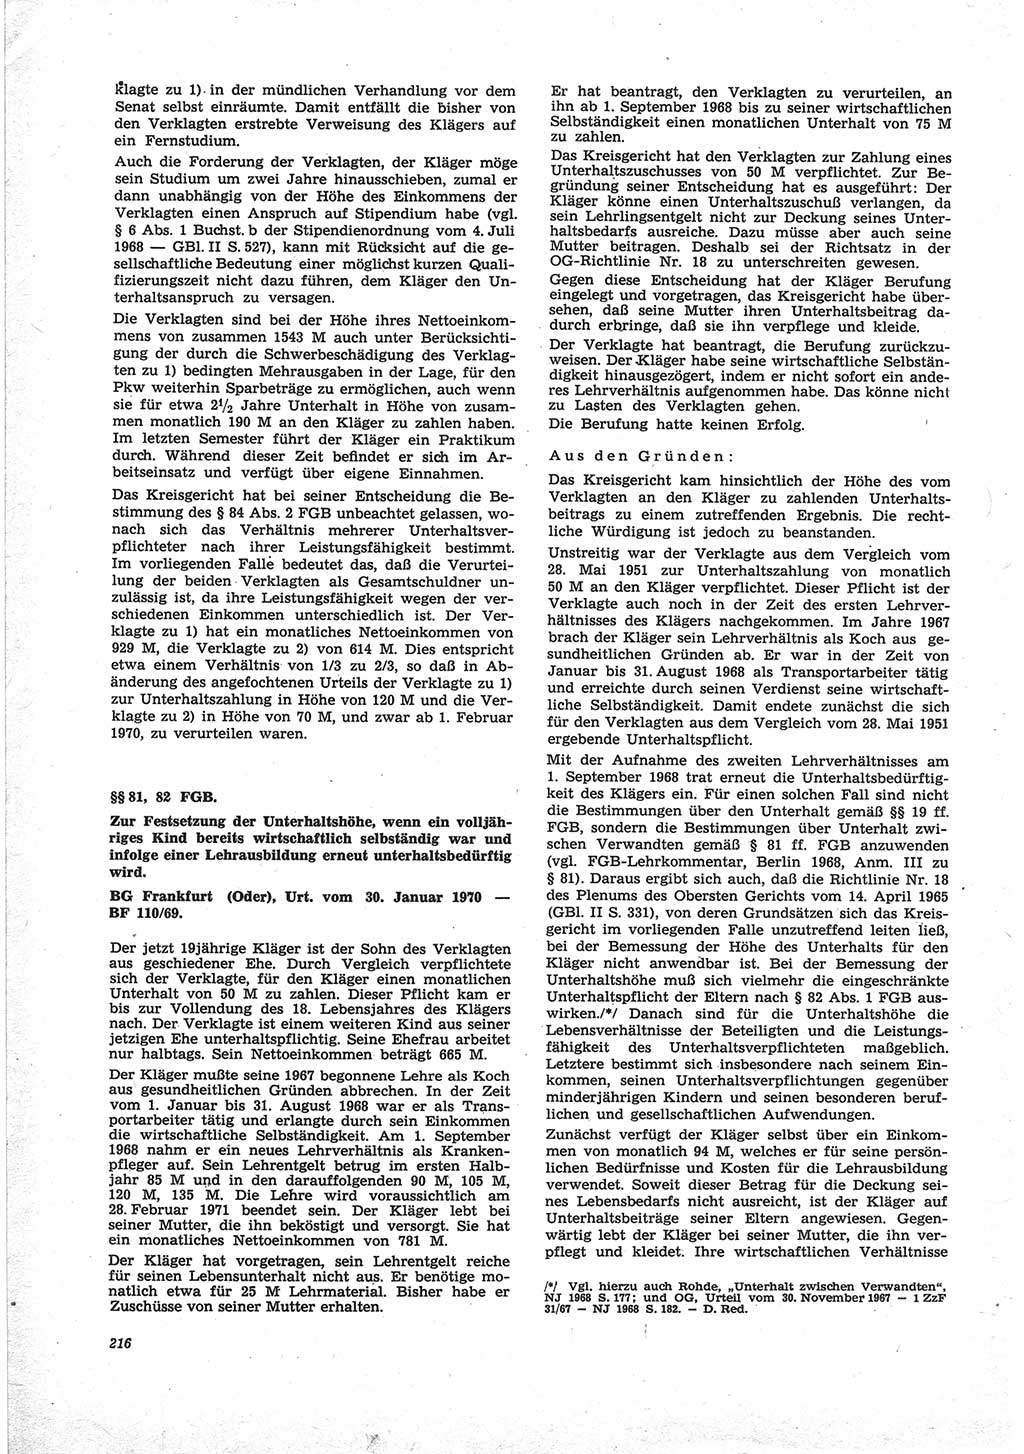 Neue Justiz (NJ), Zeitschrift für Recht und Rechtswissenschaft [Deutsche Demokratische Republik (DDR)], 25. Jahrgang 1971, Seite 216 (NJ DDR 1971, S. 216)